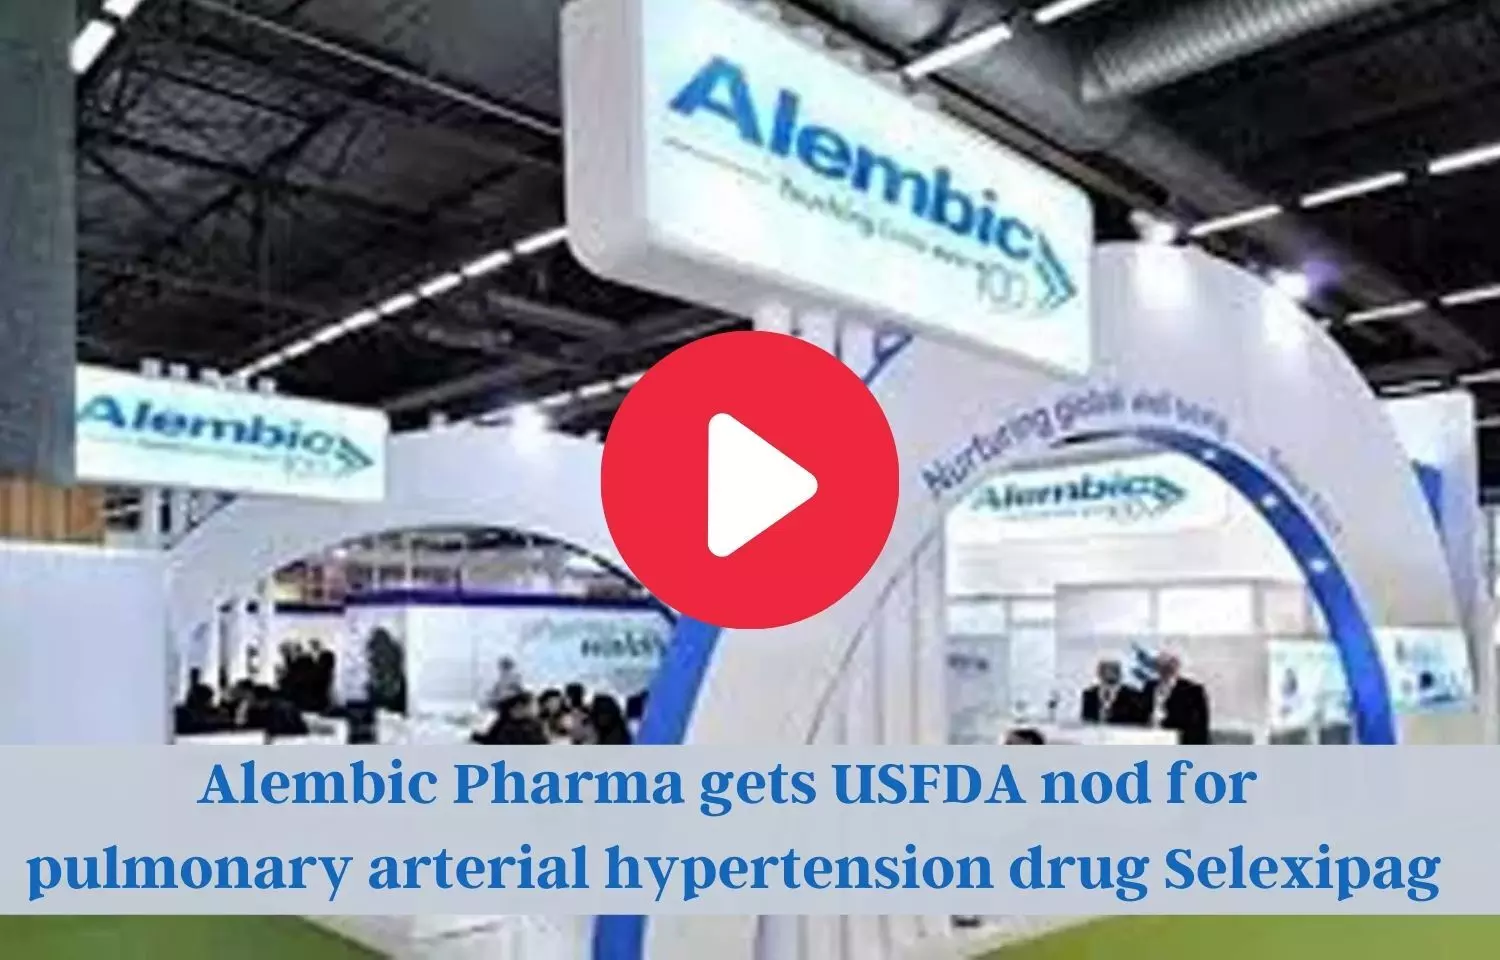 Alembic Pharma Selexipag bags USFDA okay